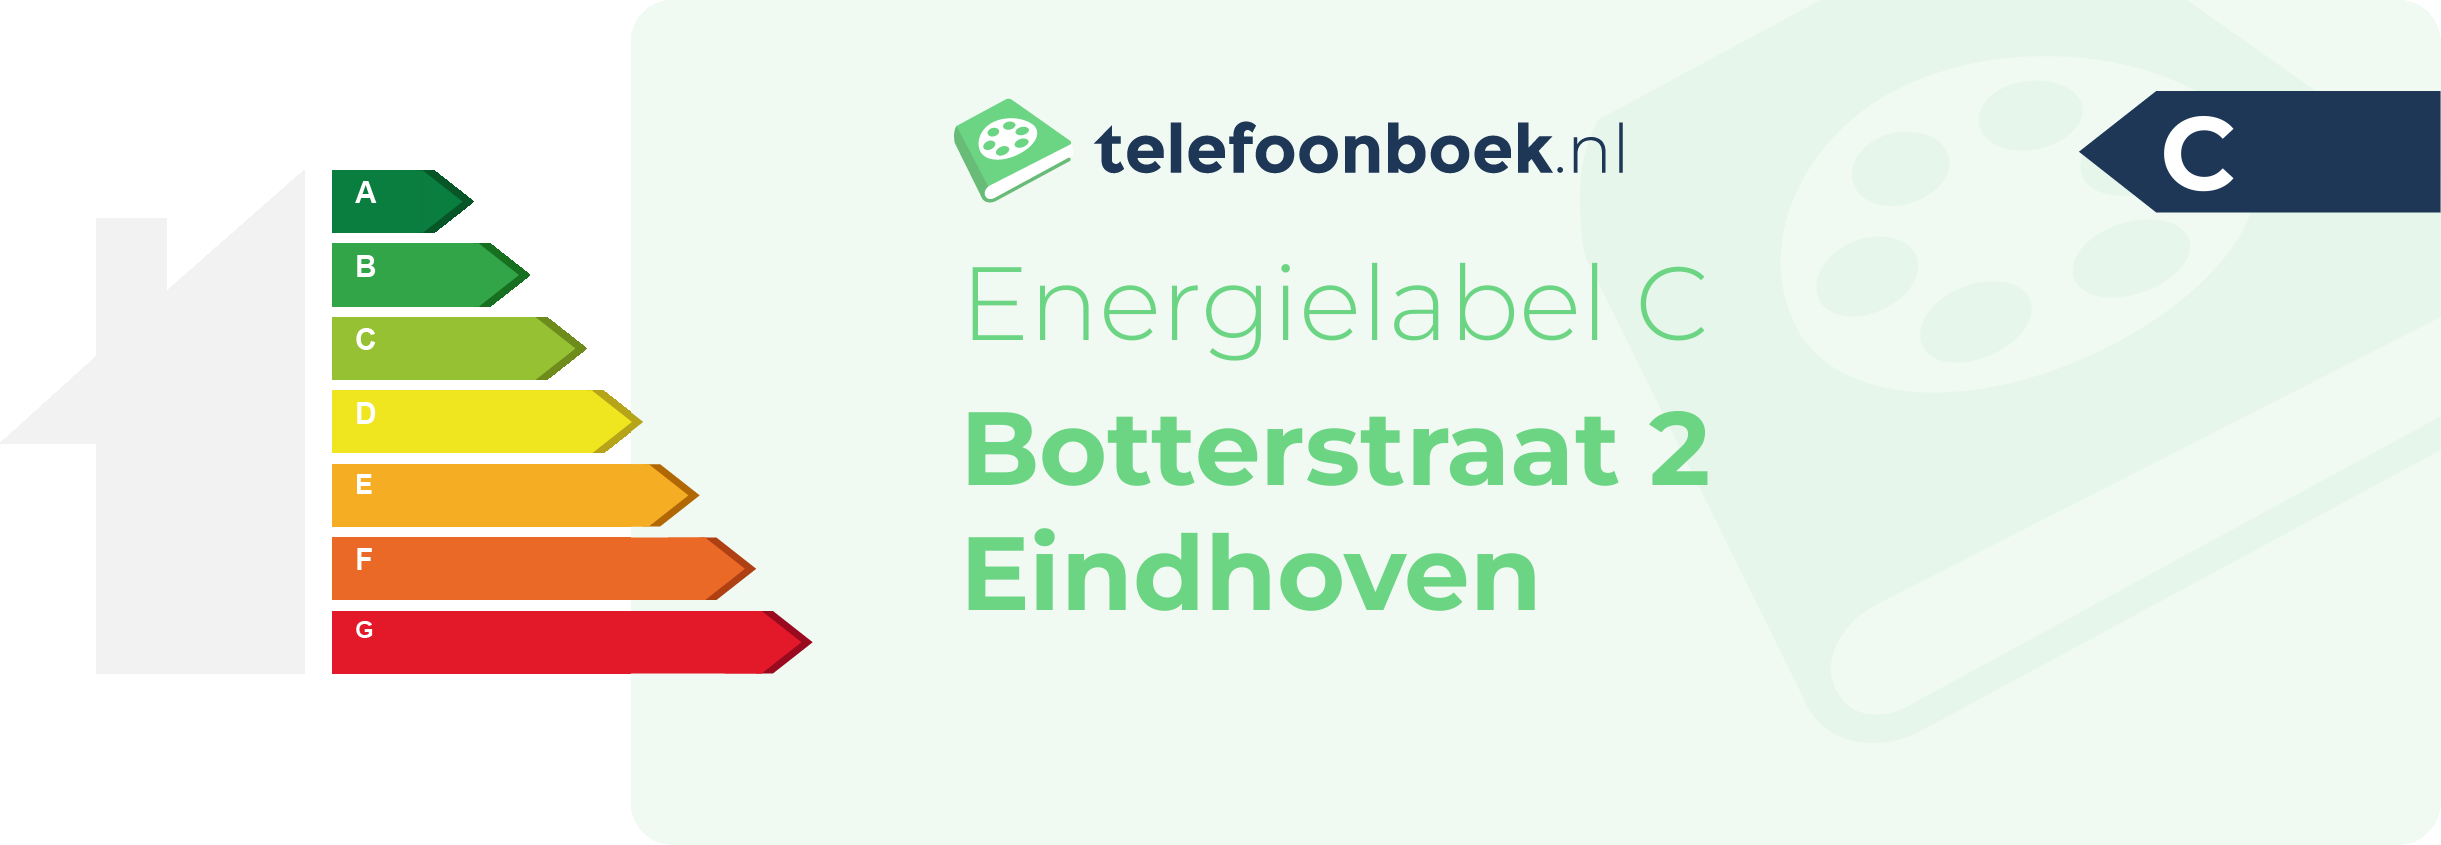 Energielabel Botterstraat 2 Eindhoven